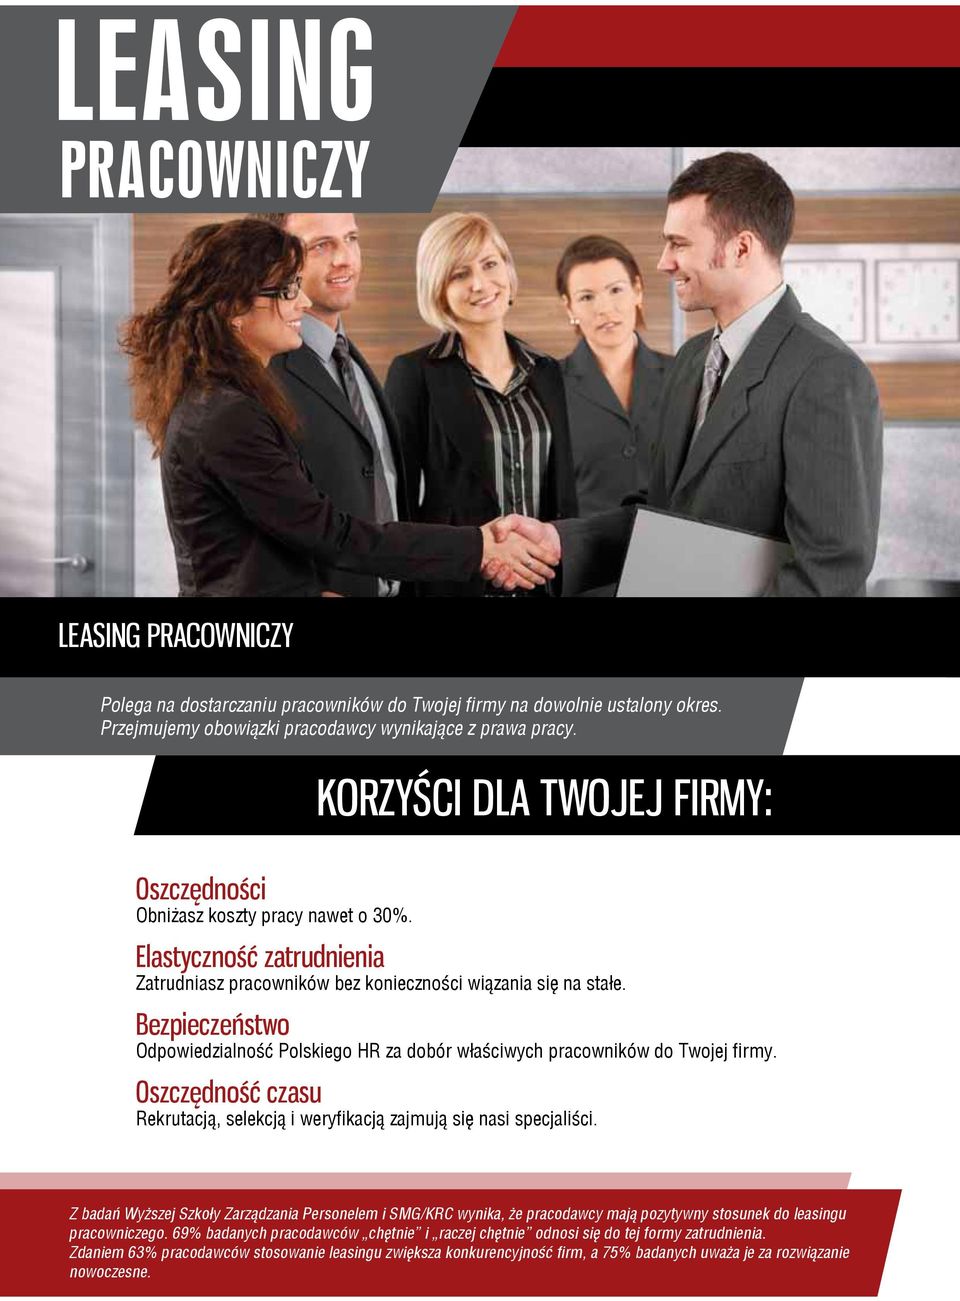 Bezpieczeństwo Odpowiedzialność Polskiego HR za dobór właściwych pracowników do Twojej firmy. Oszczędność czasu Rekrutacją, selekcją i weryfikacją zajmują się nasi specjaliści.